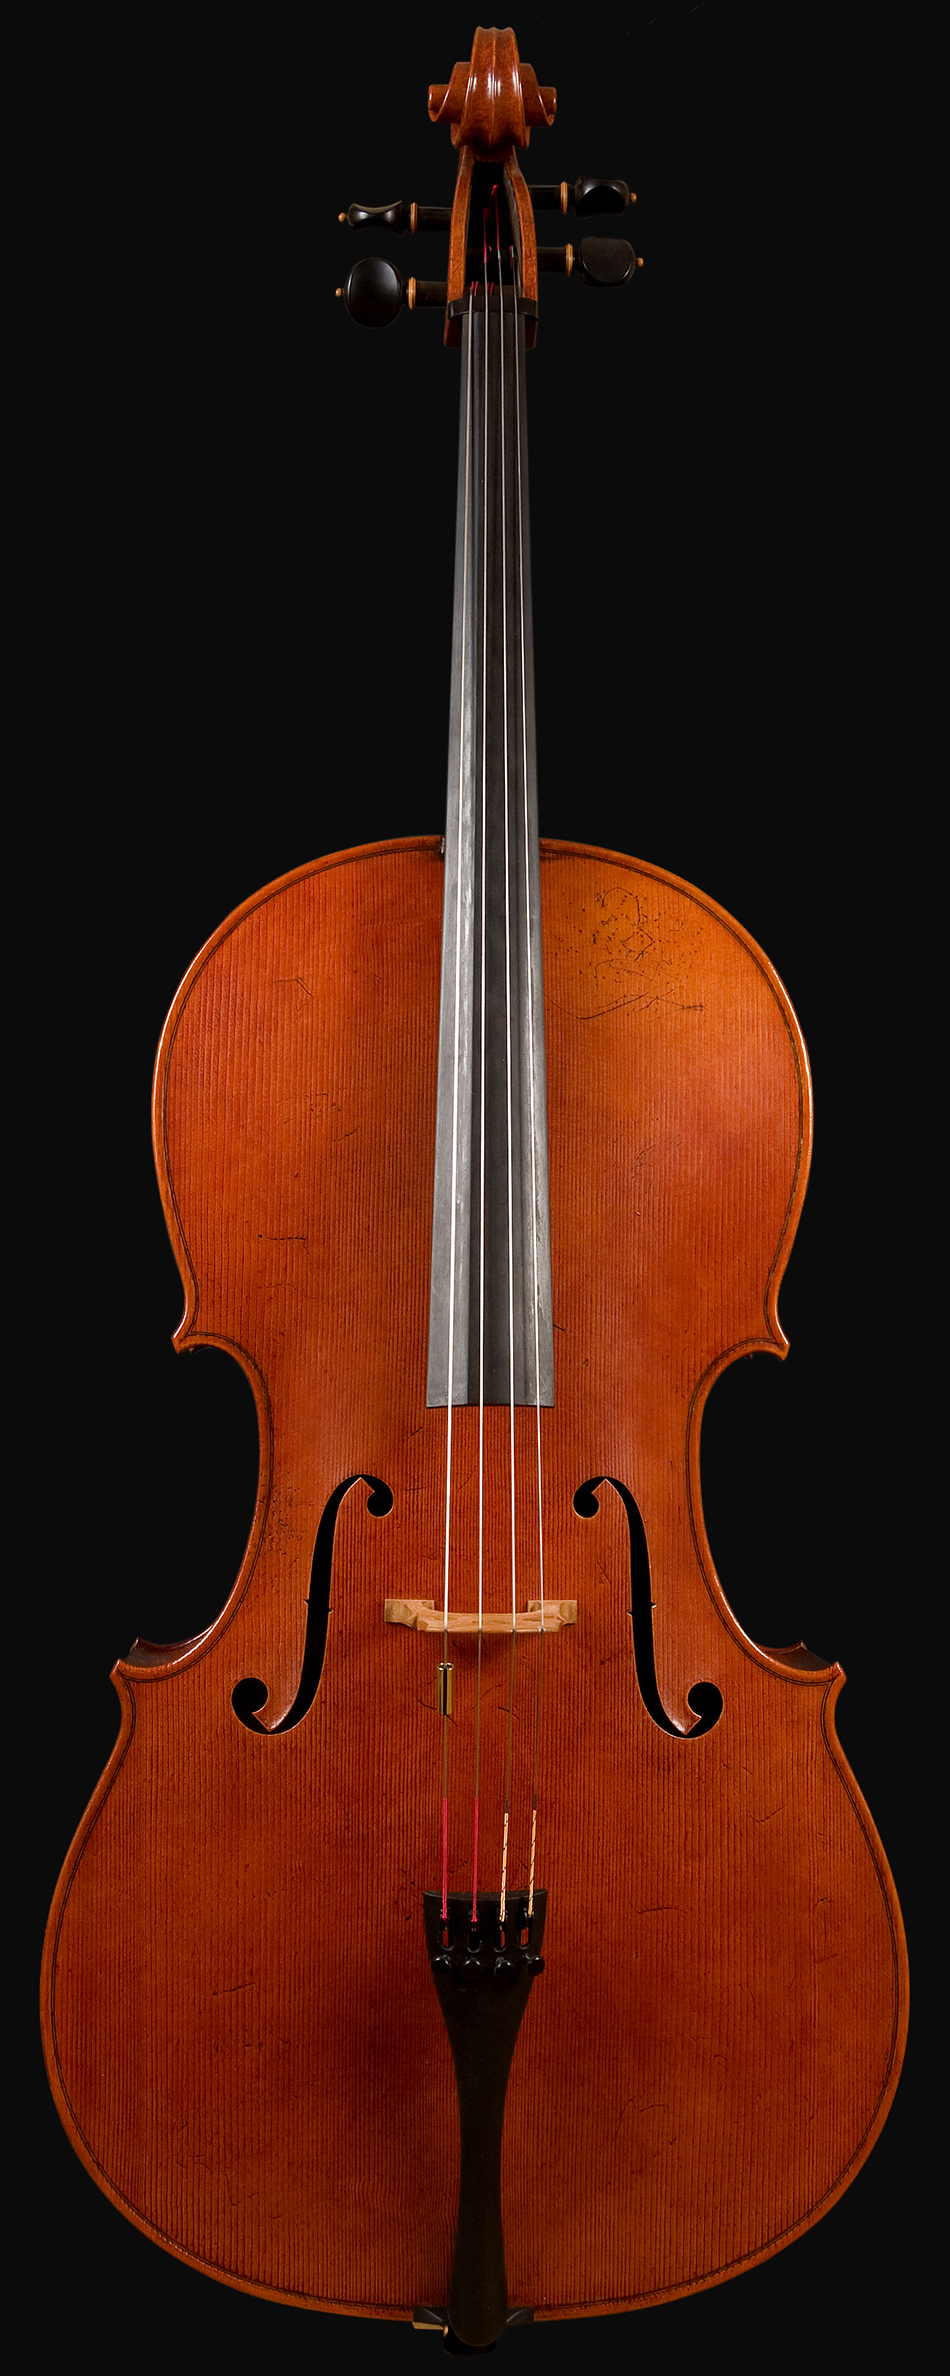 Cello 'Occhio di pernice', Massimo Mura